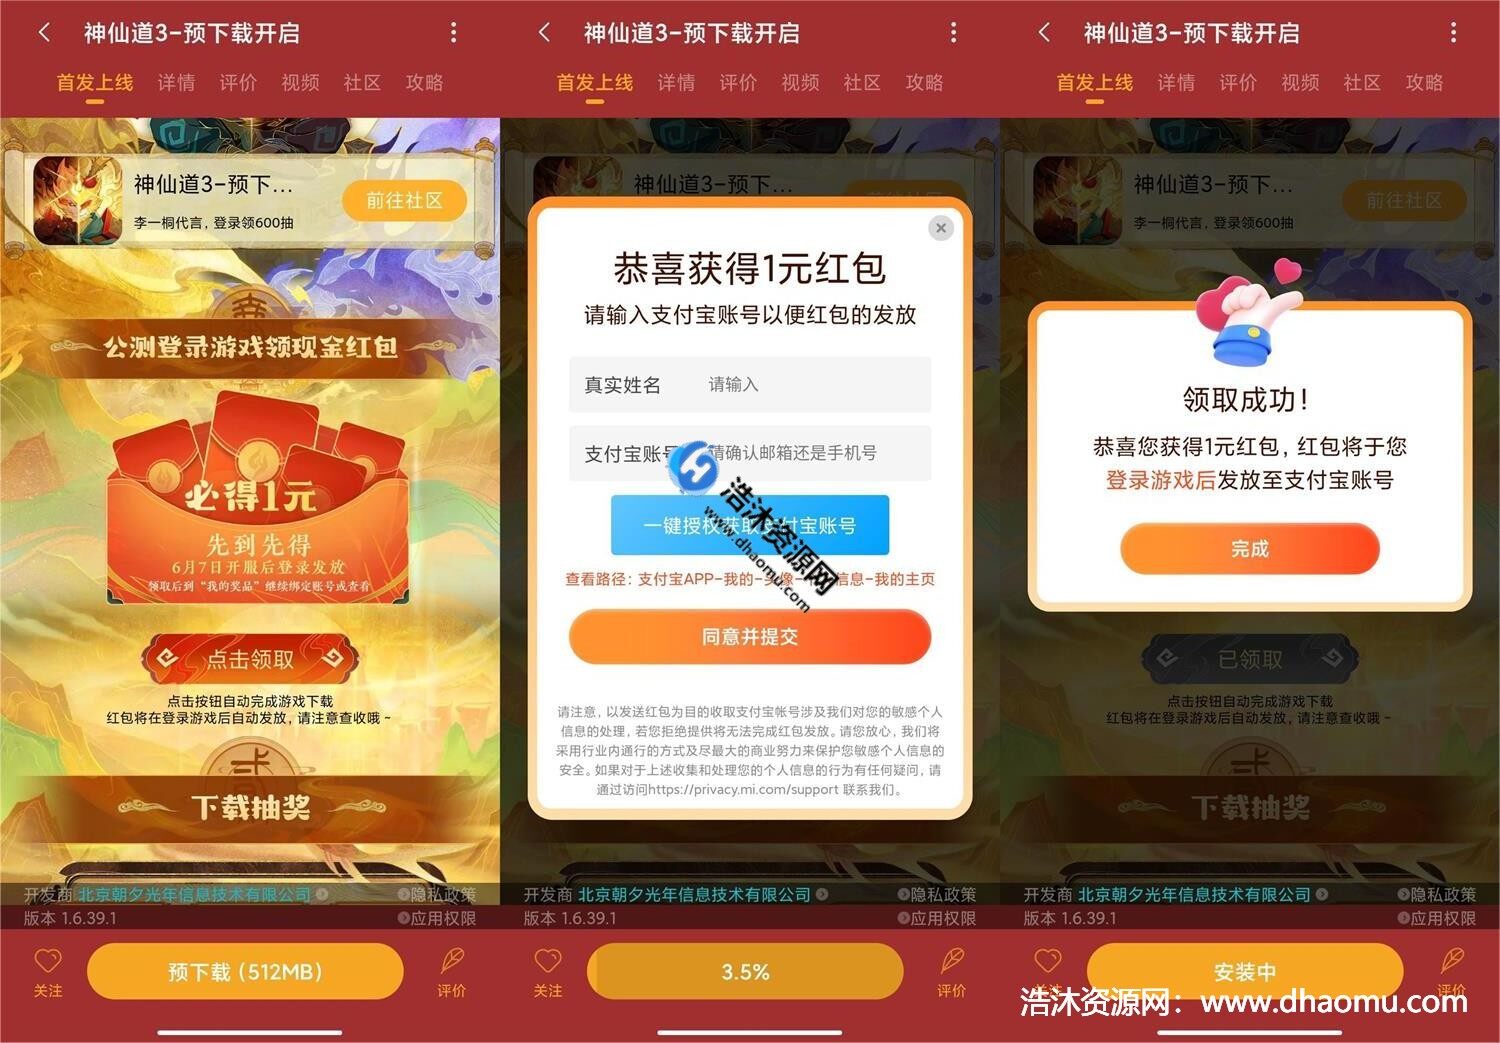 小米手机游戏中心神仙道3下载游戏免费领取1元支付宝现金红包